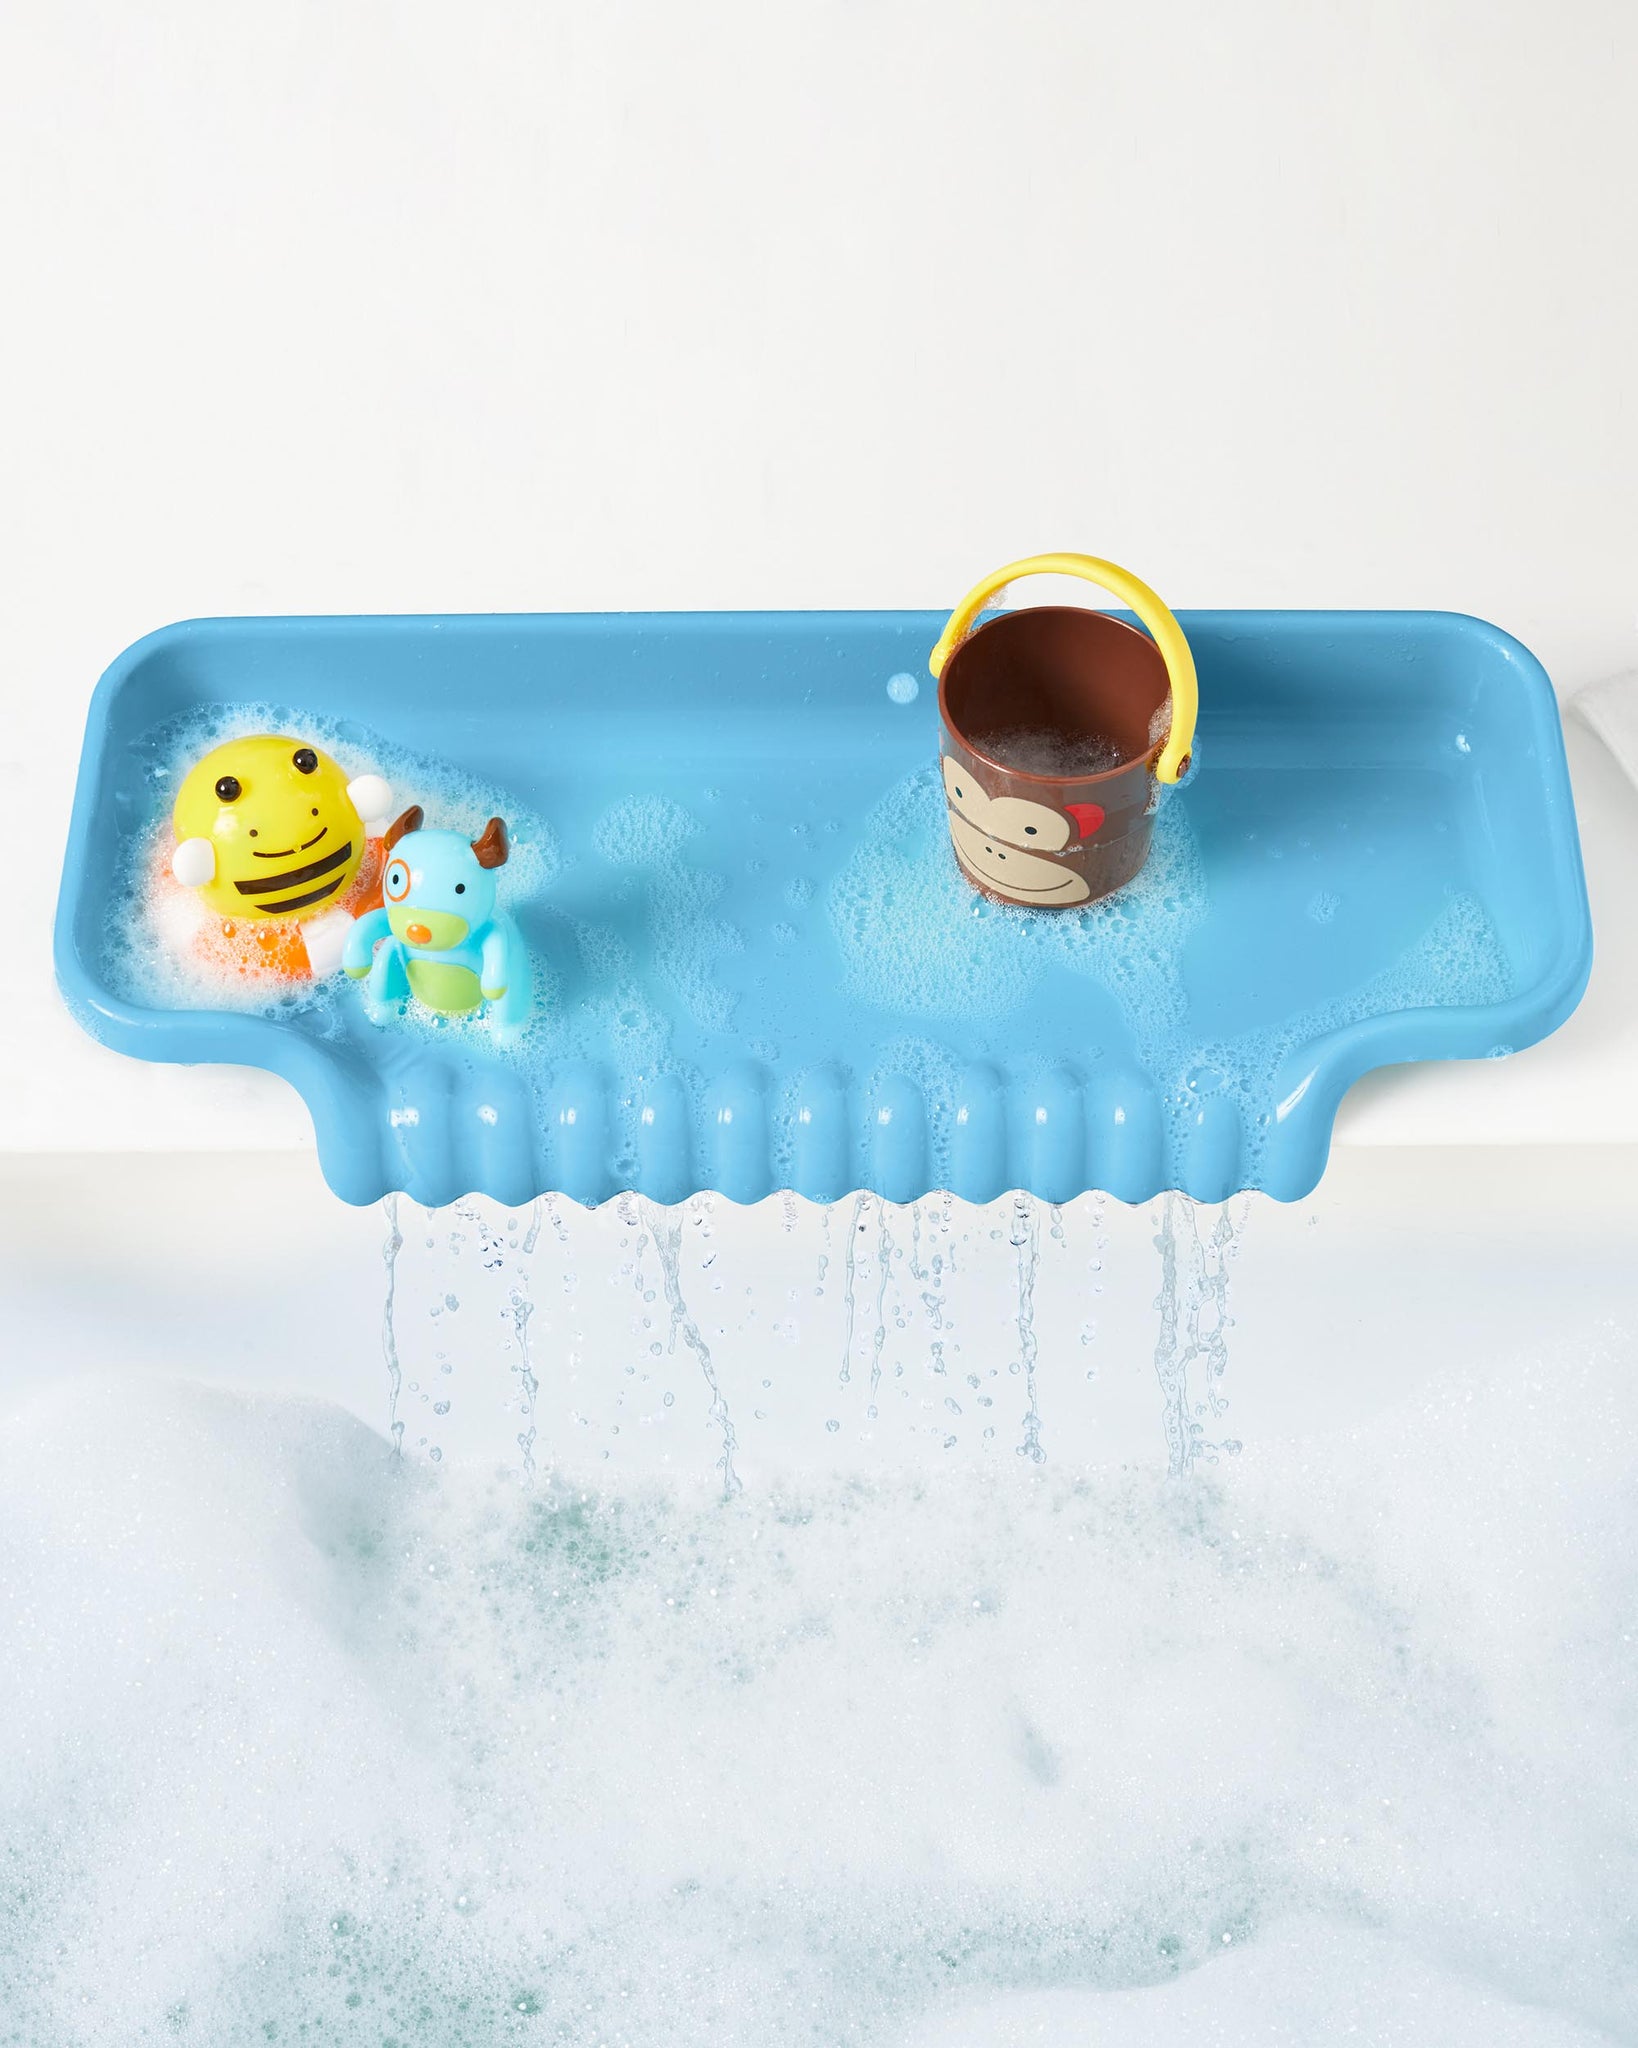 Shelfie bathtub tray for safer play - Savvy Sassy Moms